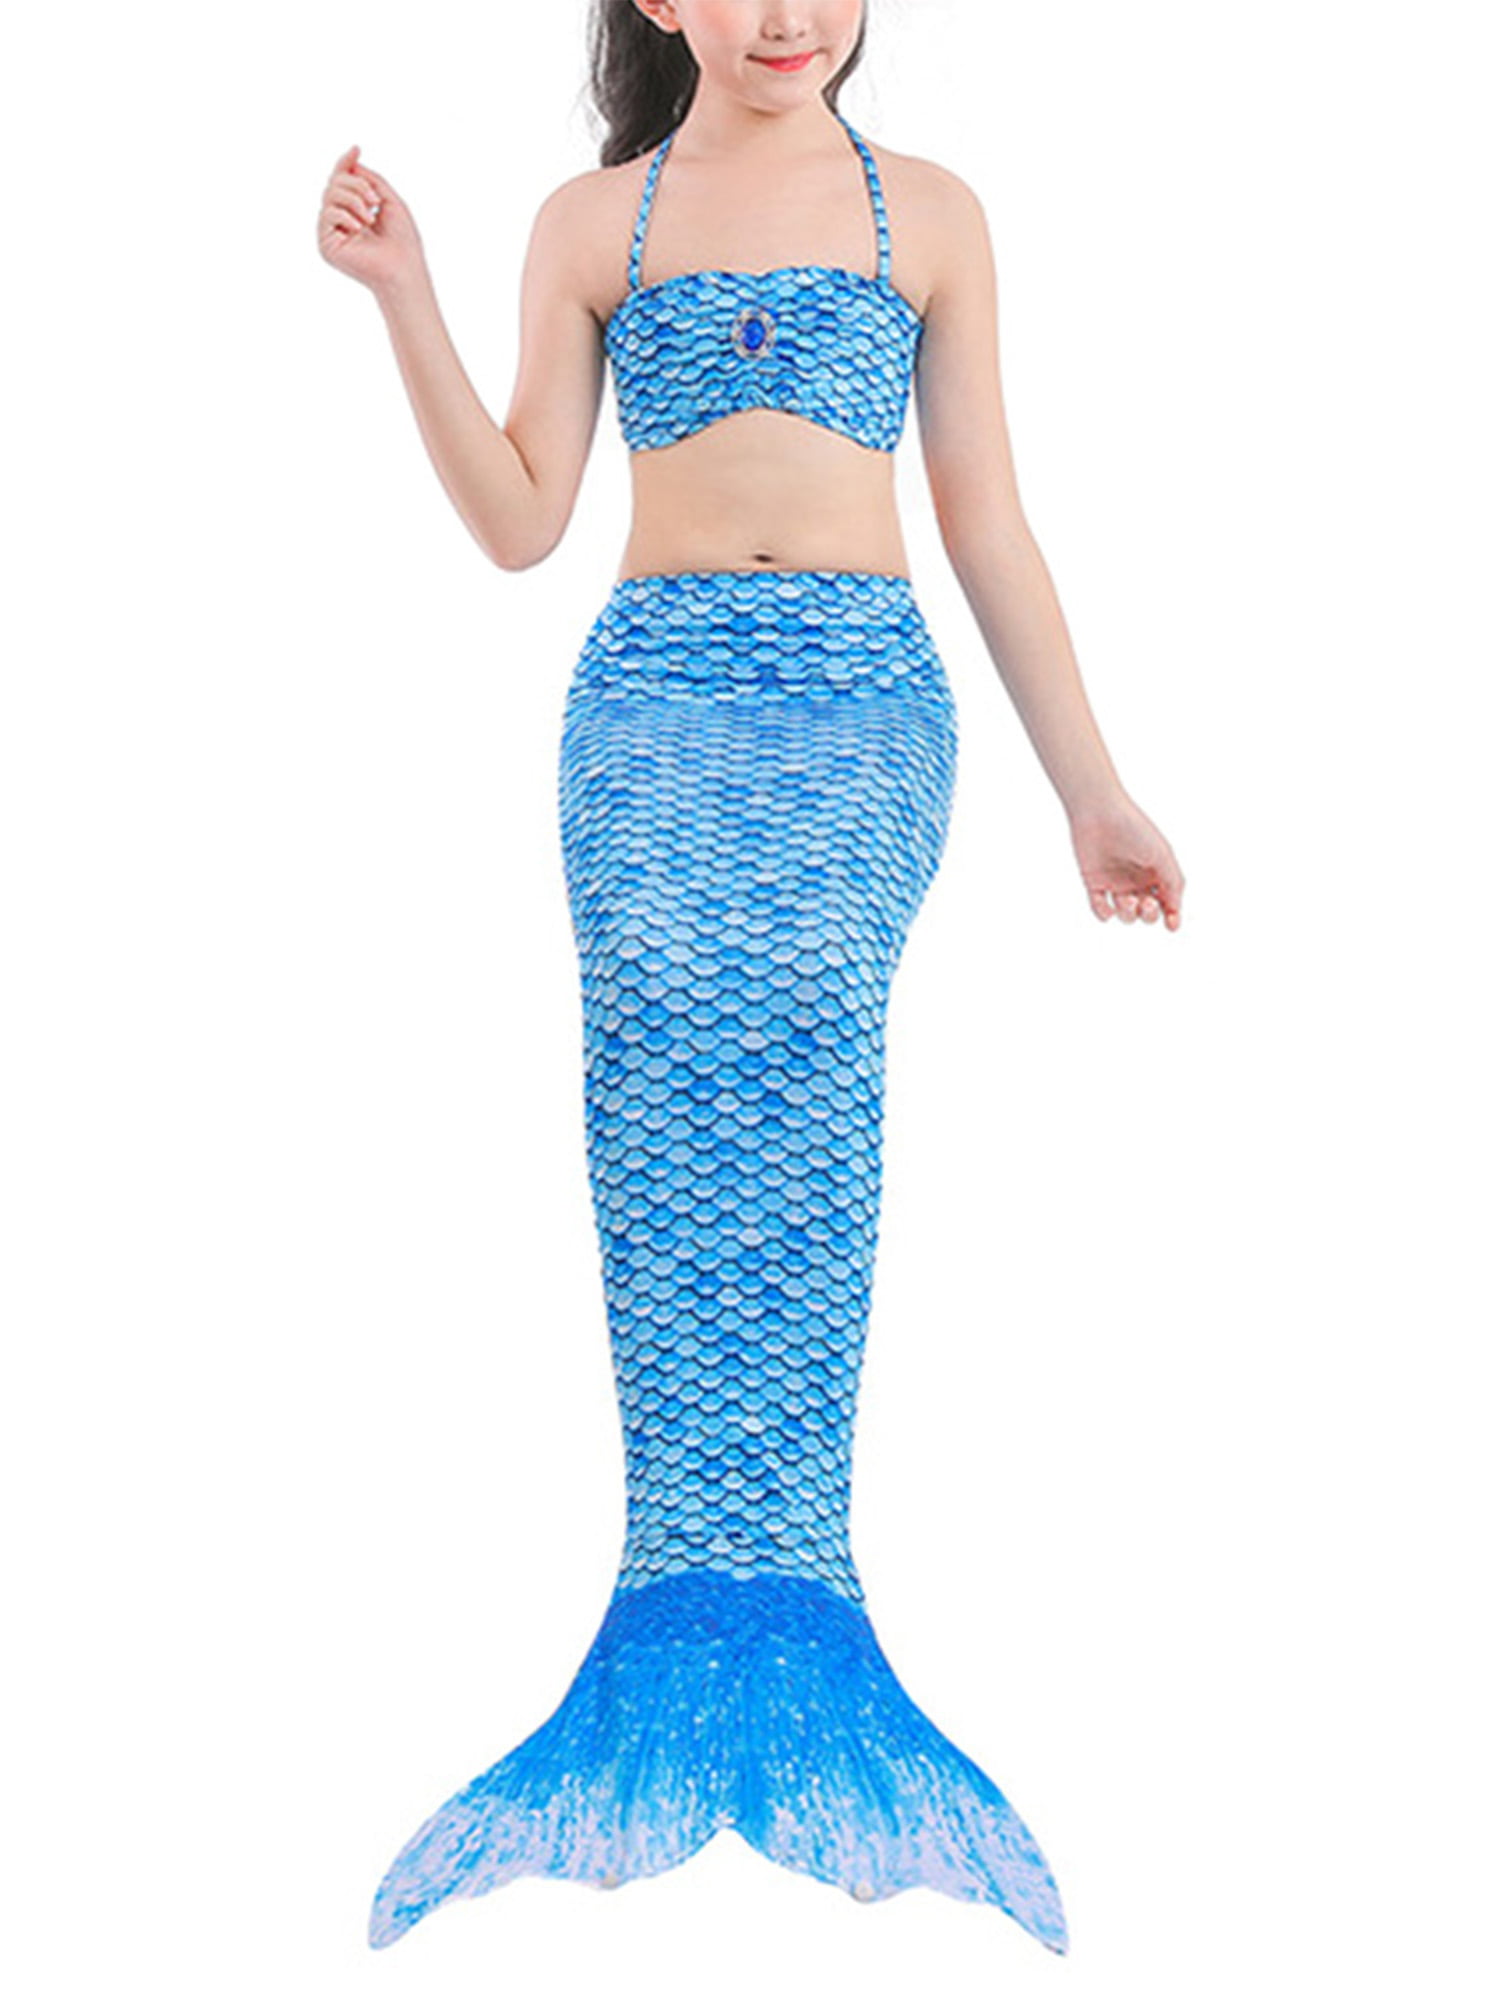 3Pcs Kids Girls Swimmable Mermaid Tail Bikini Swimsuit Set Swimming Costumes US